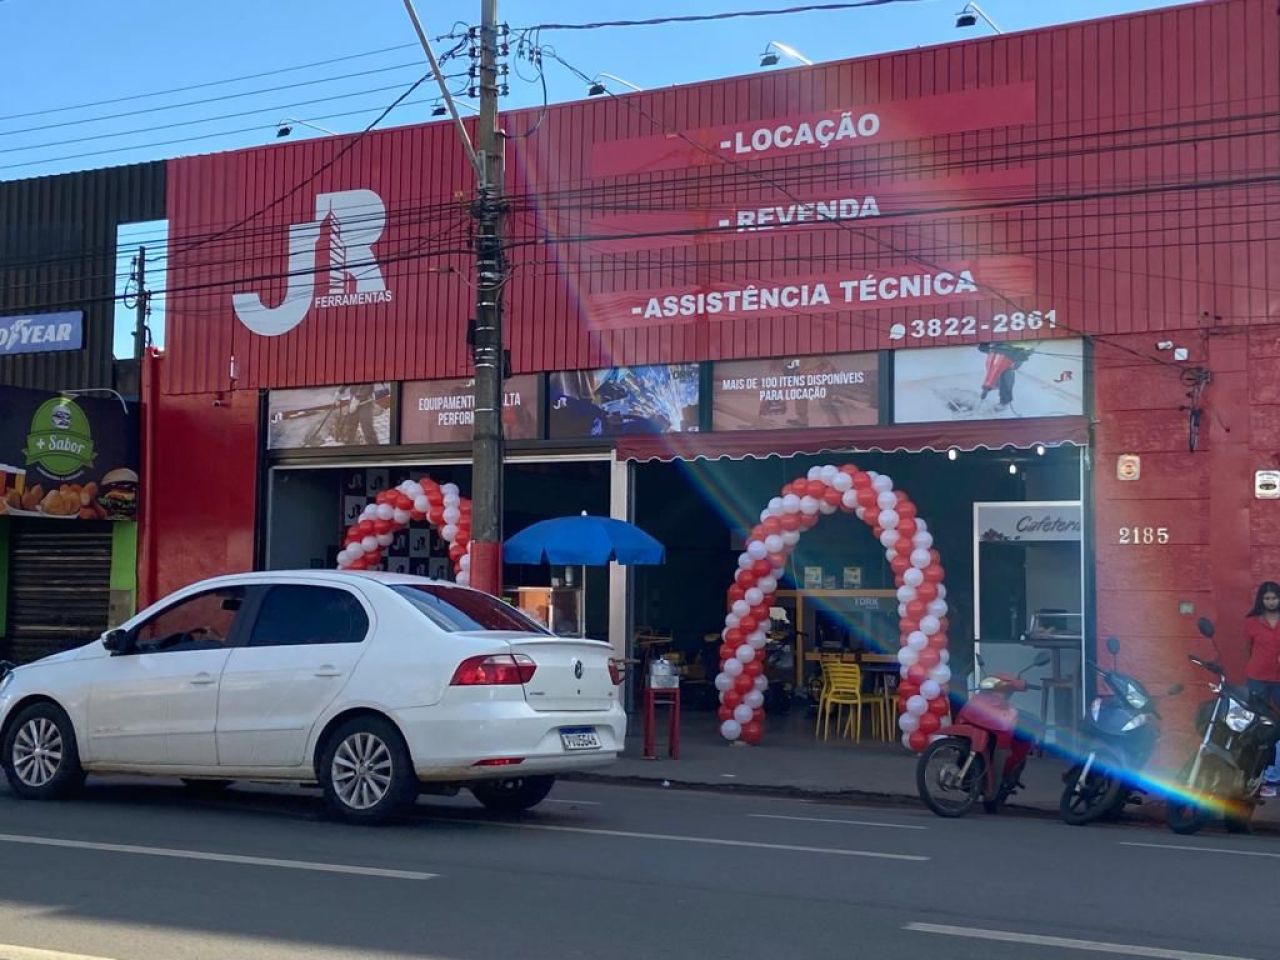 JR Ferramentas reinaugurara sua loja com um show de tecnologia e inovação